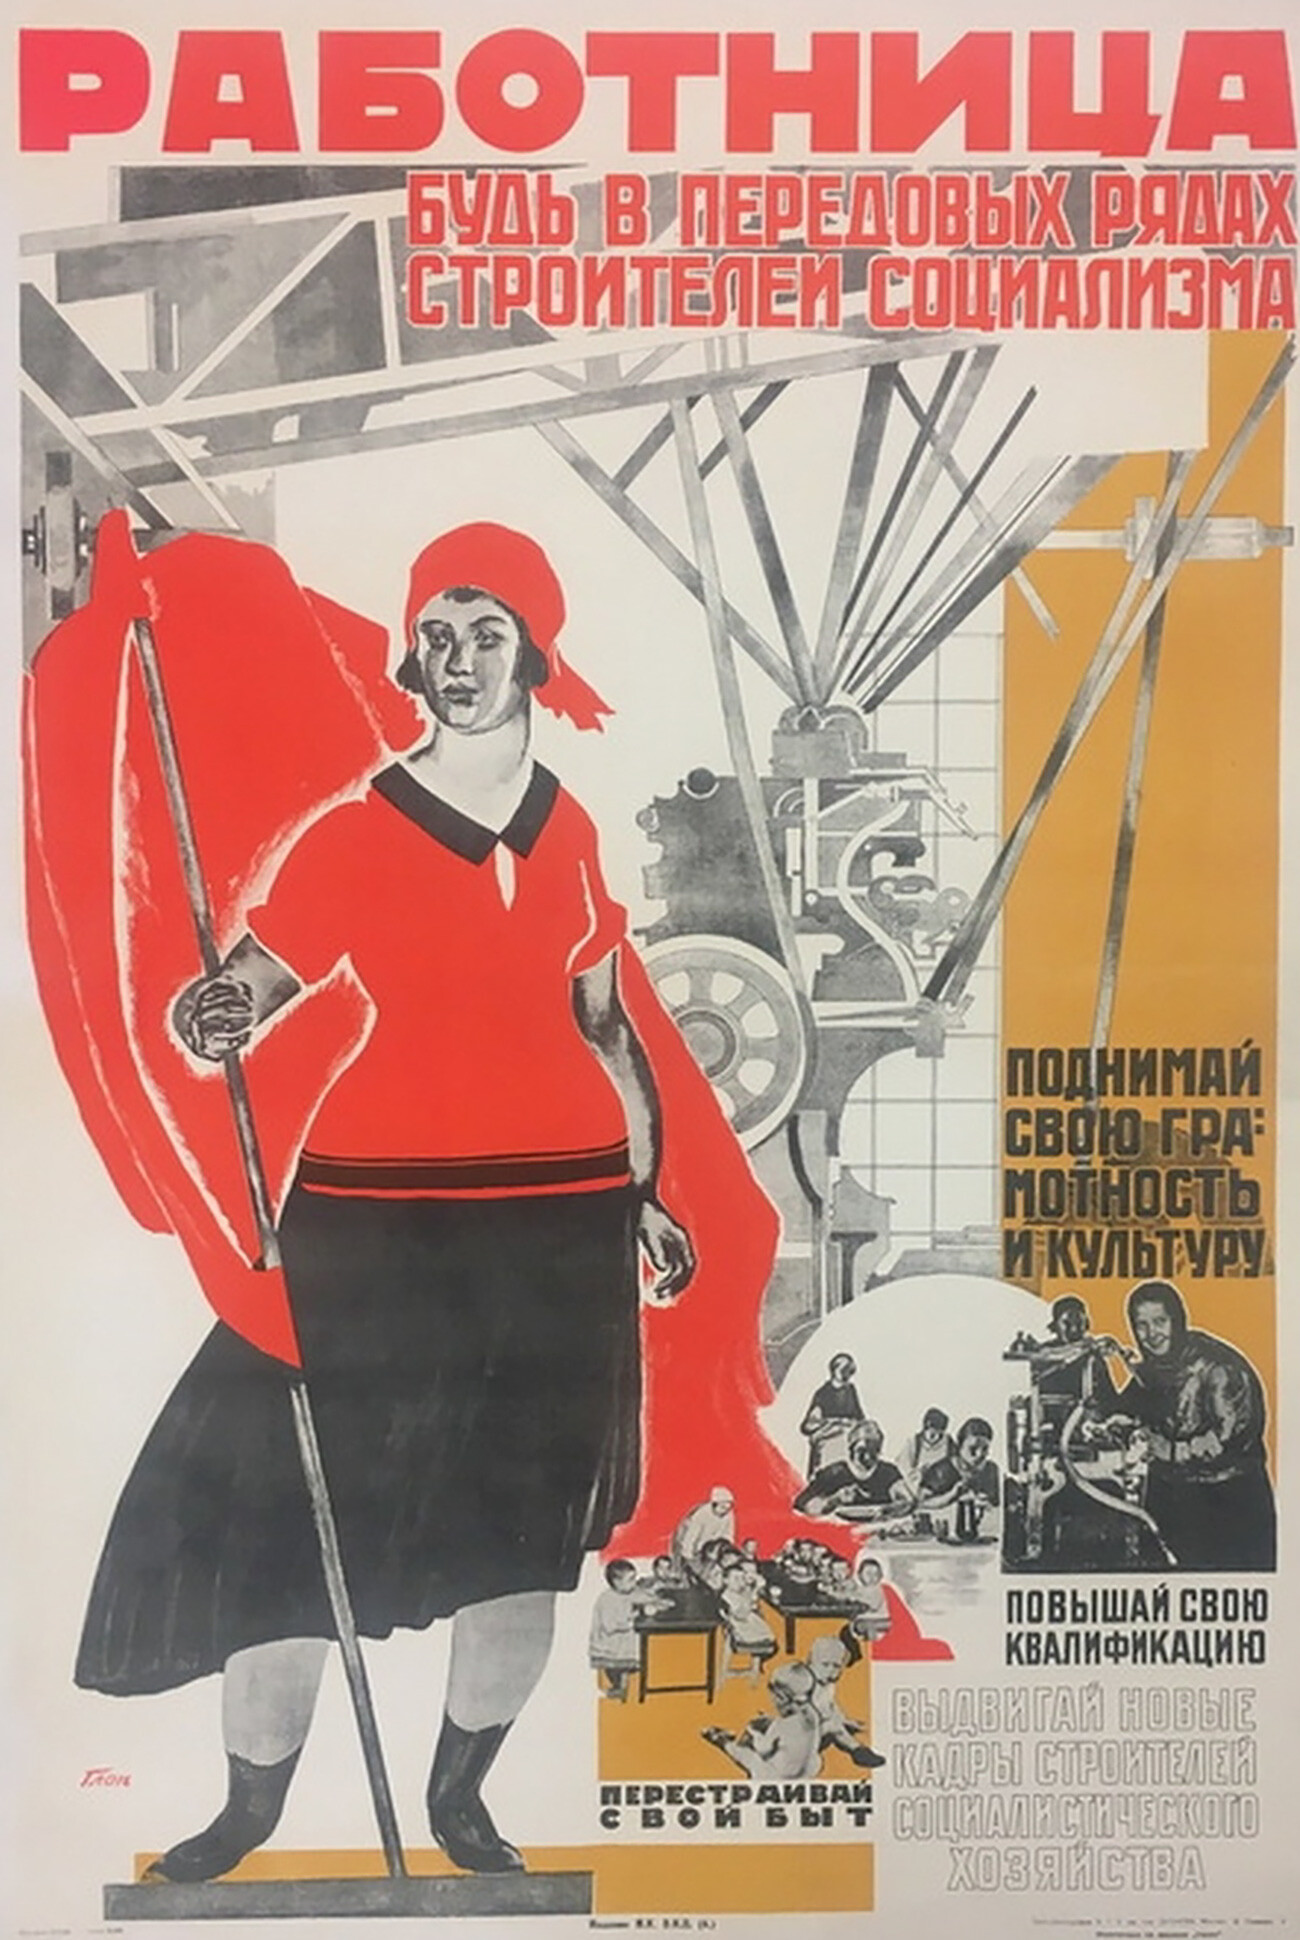 “Mulher trabalhadora, esteja nas primeiras fileiras dos construtores do socialismo, eleve sua alfabetização e cultura, melhore sua qualificação”